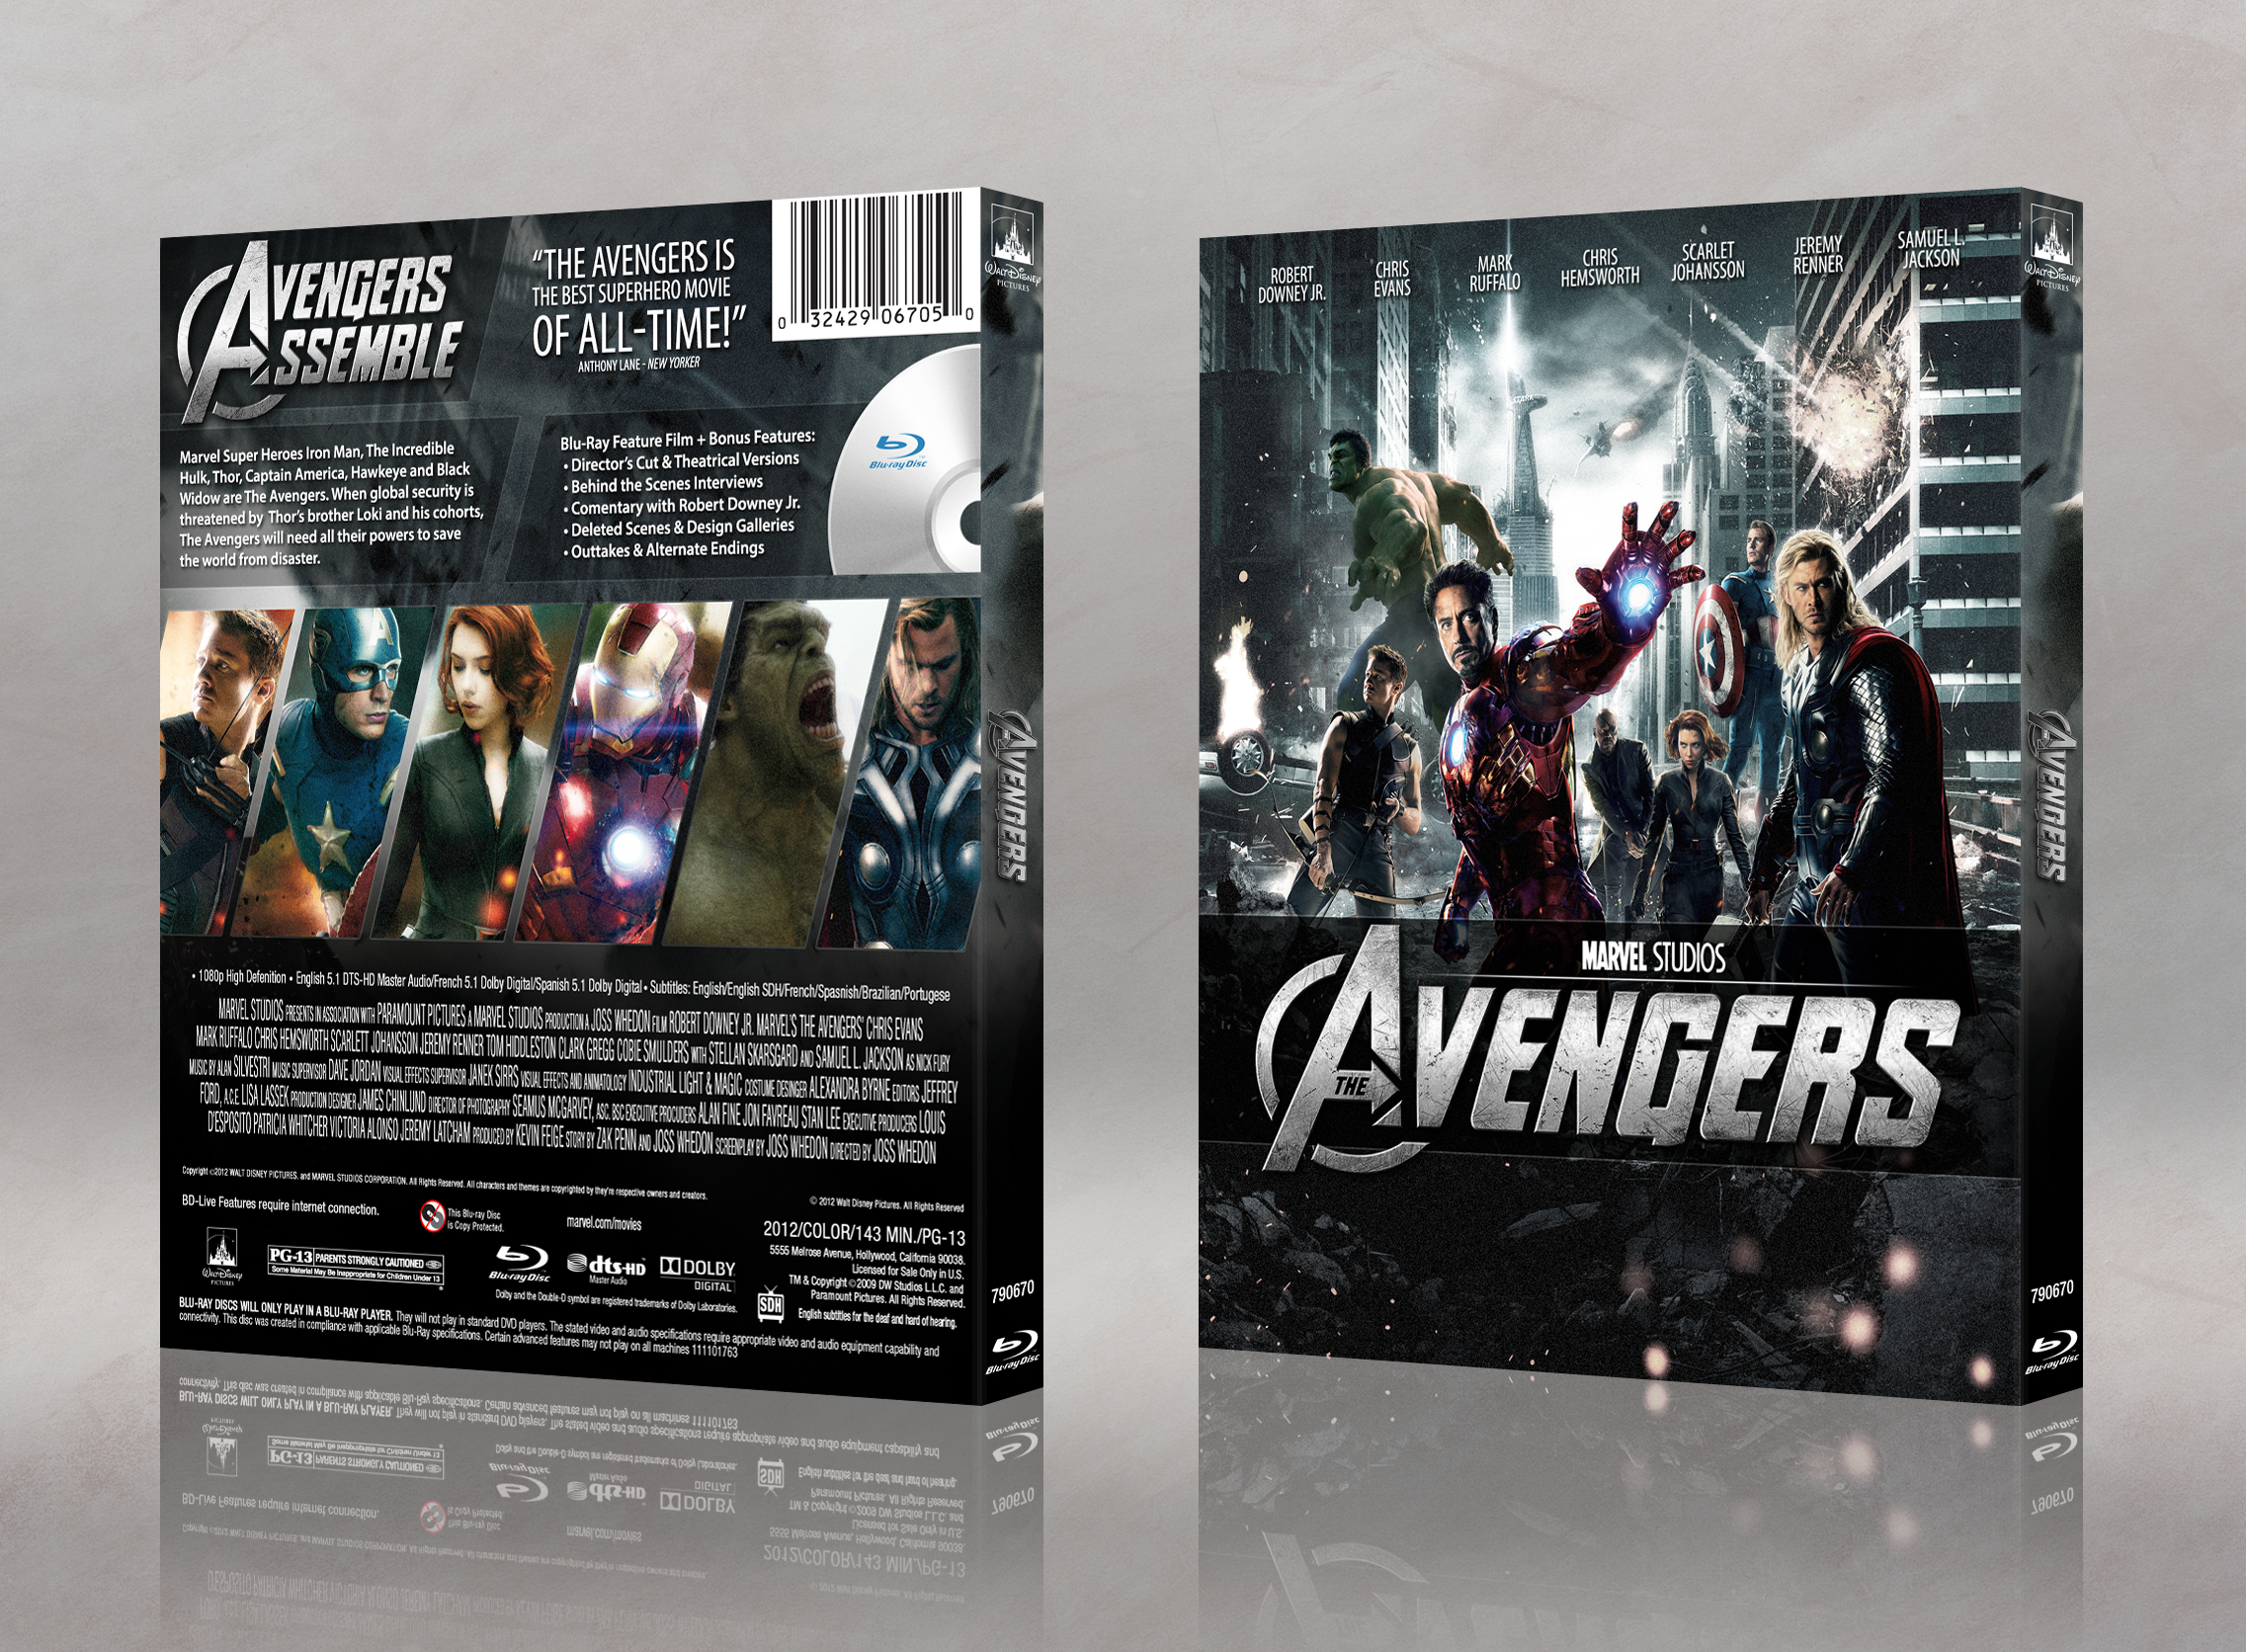 Marvel's The Avengers box cover